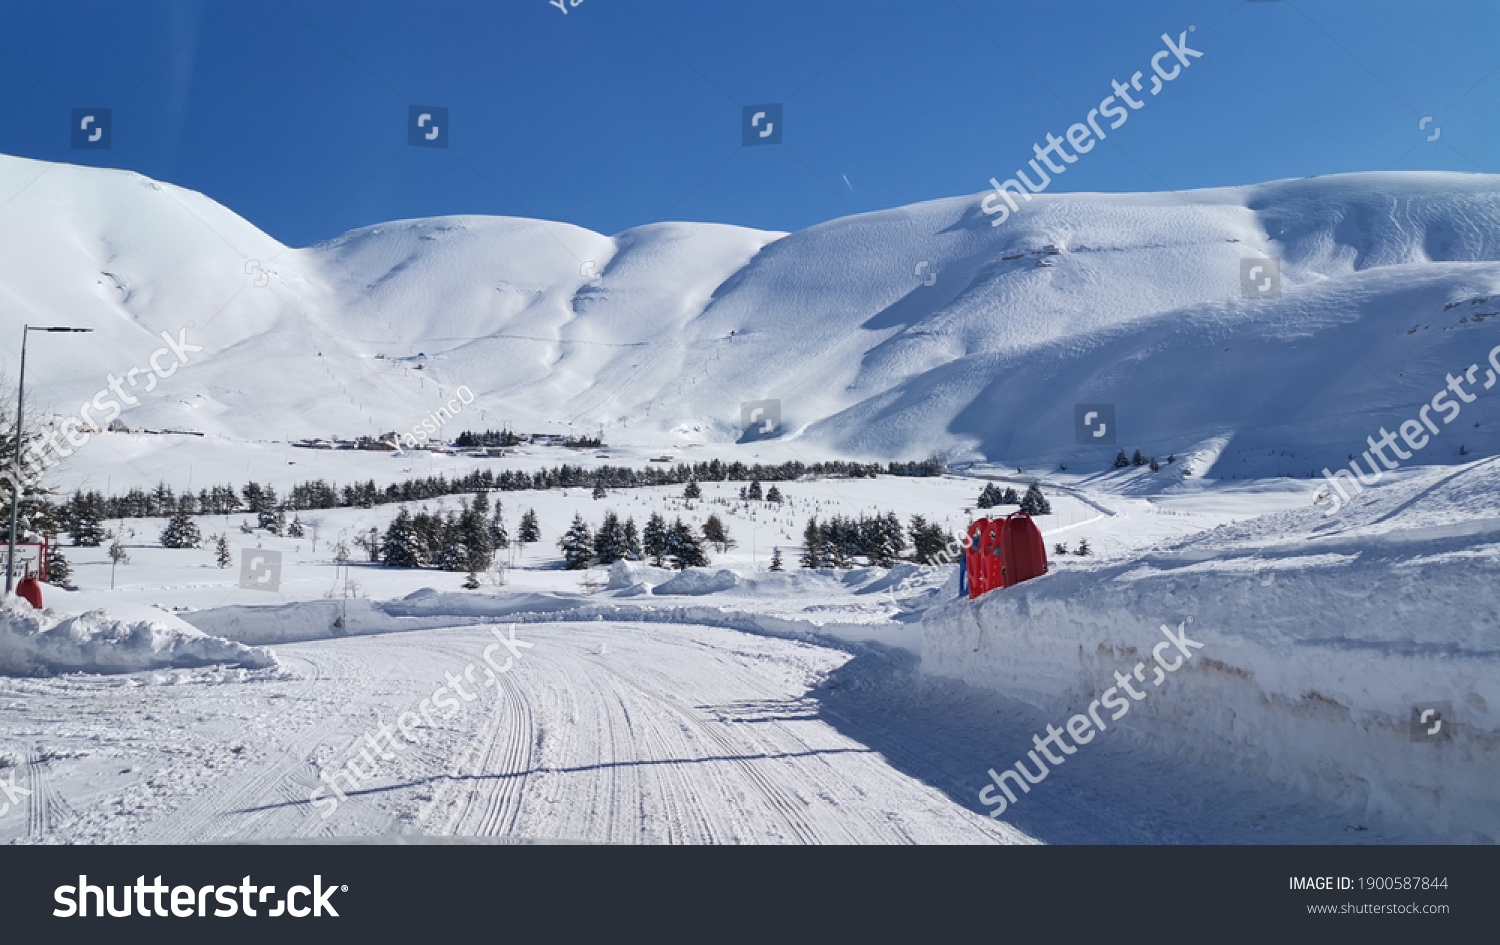  cedar mountain lebanon mountain in winter with snow  #1900587844